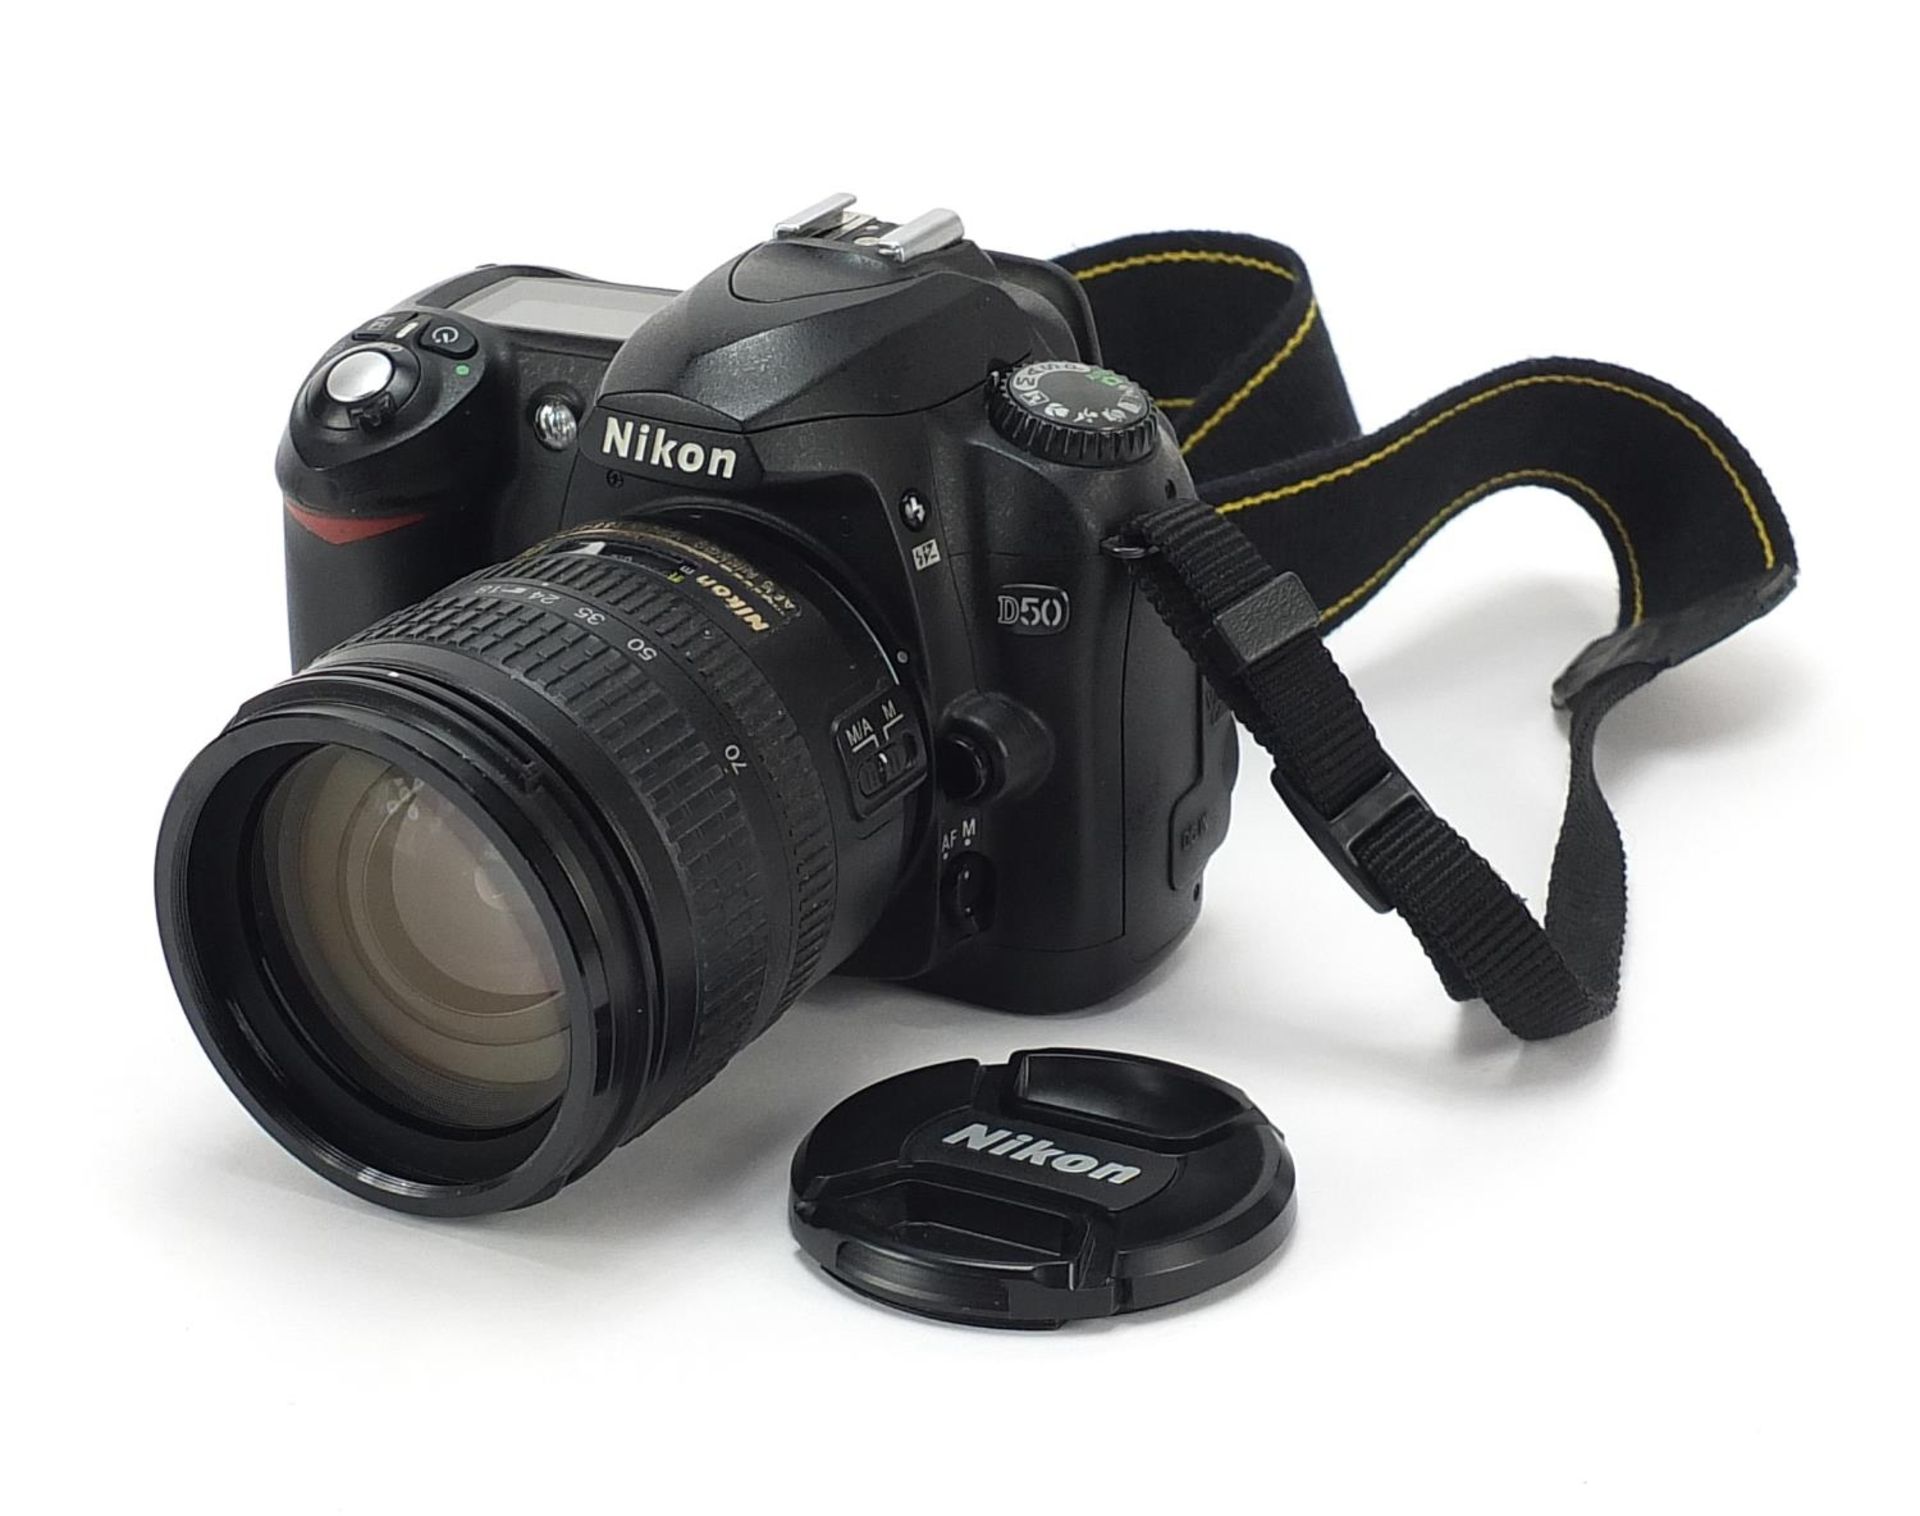 Nikon D50 DSL camera